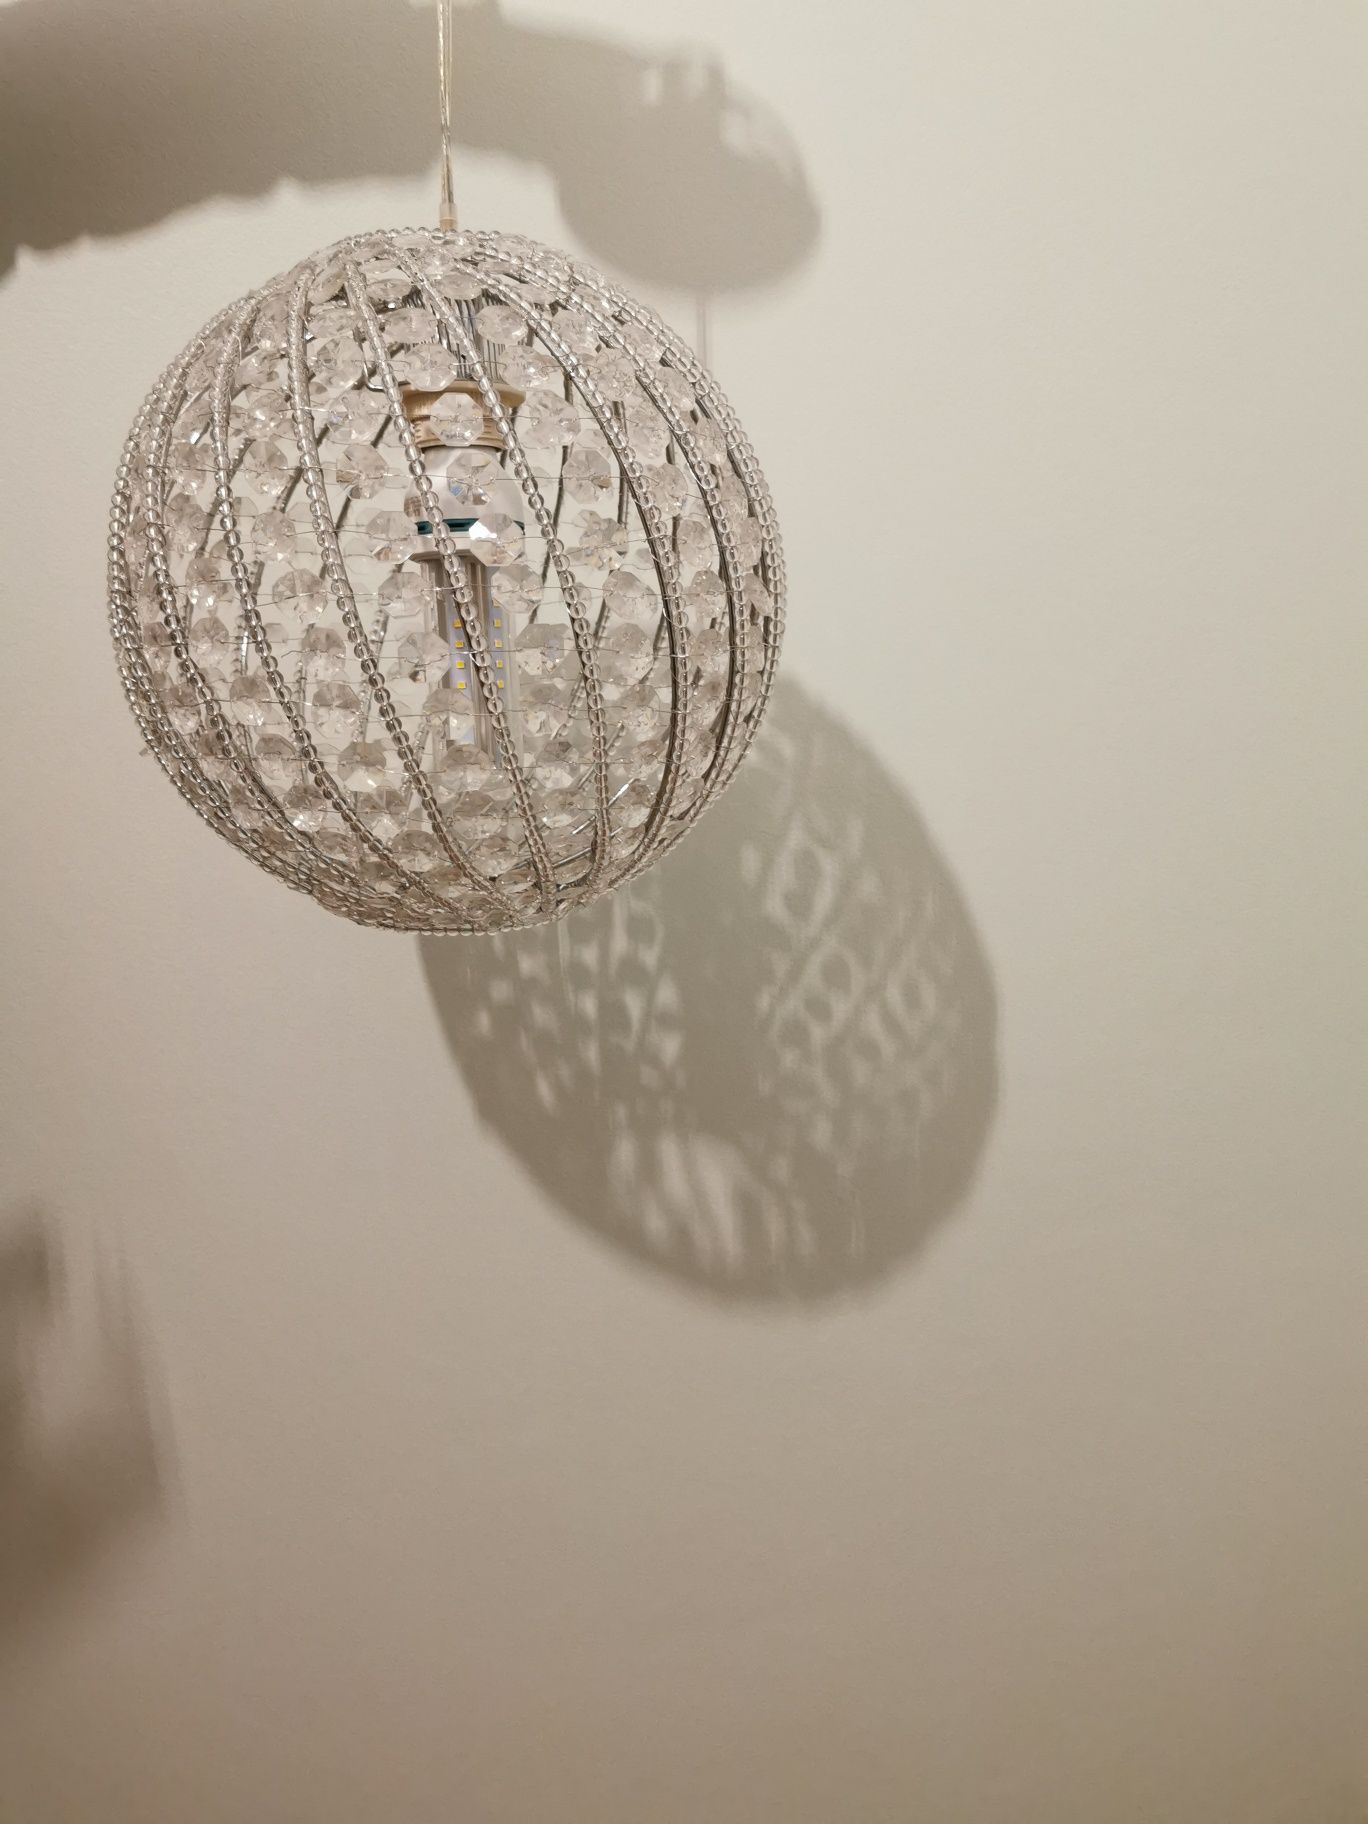 Lampa wisząca z kryształami.